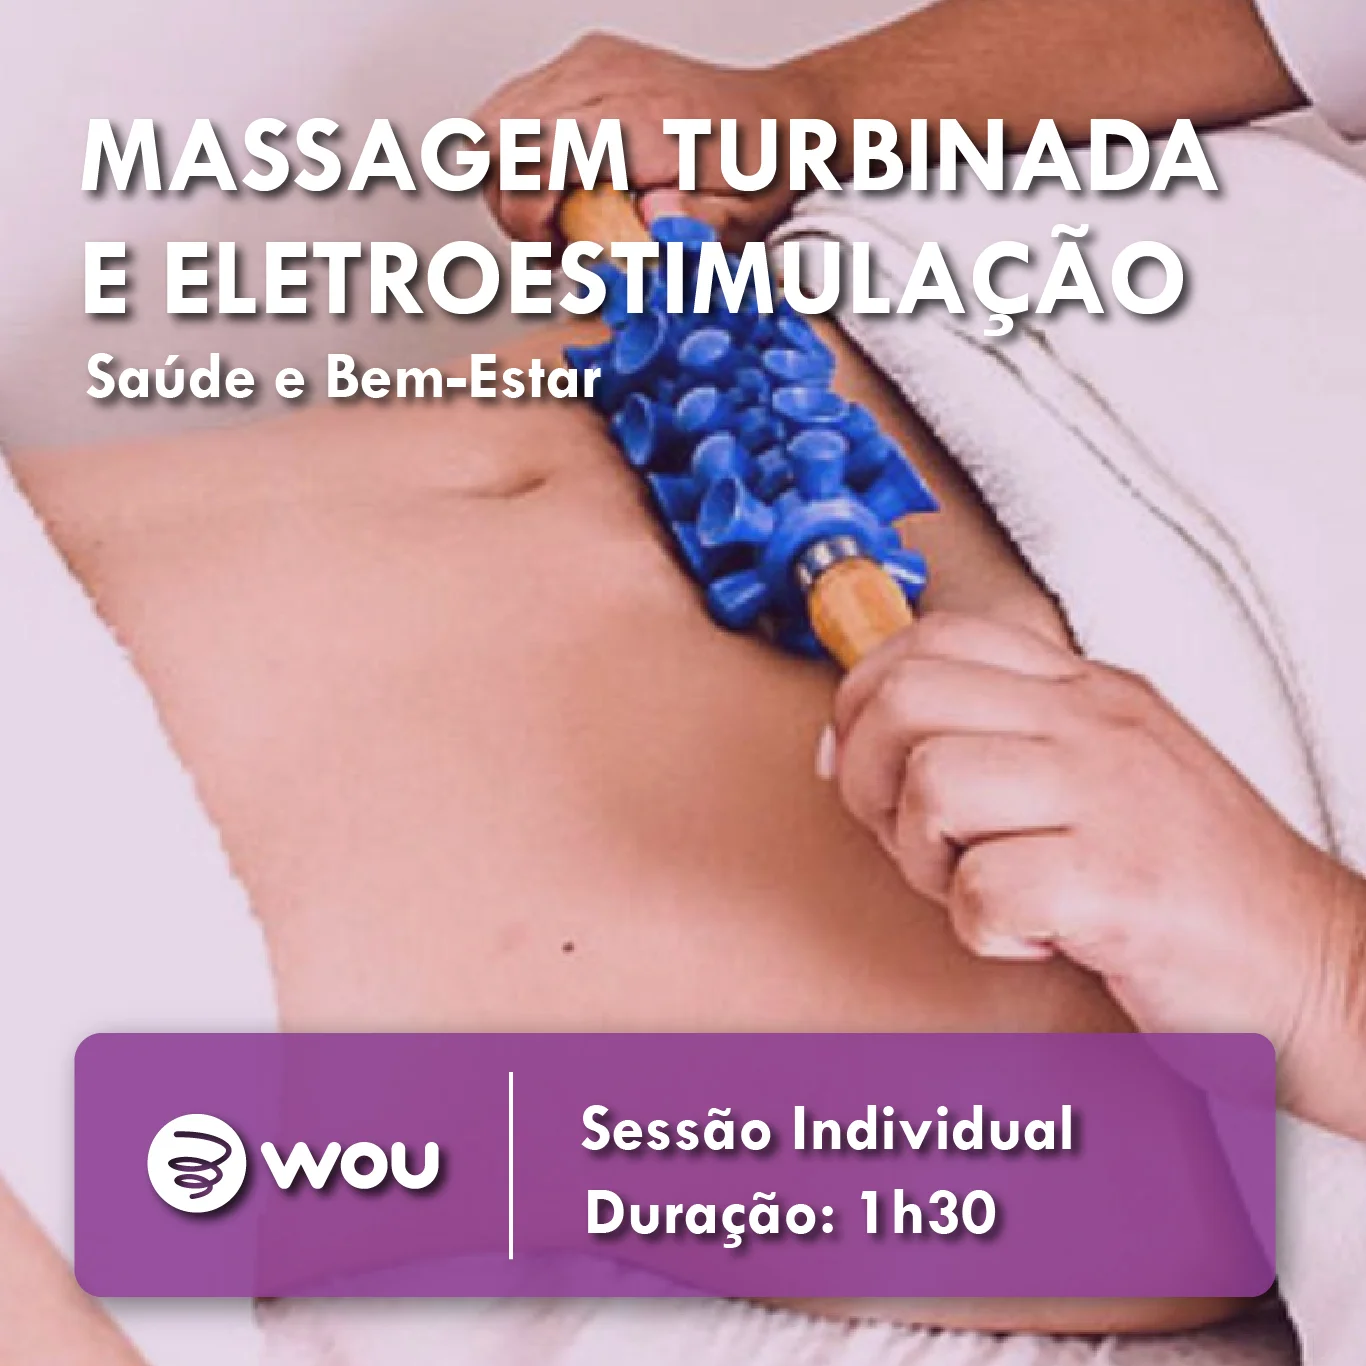 Massagem Turbinada e Eletroestimulação em Aveiro